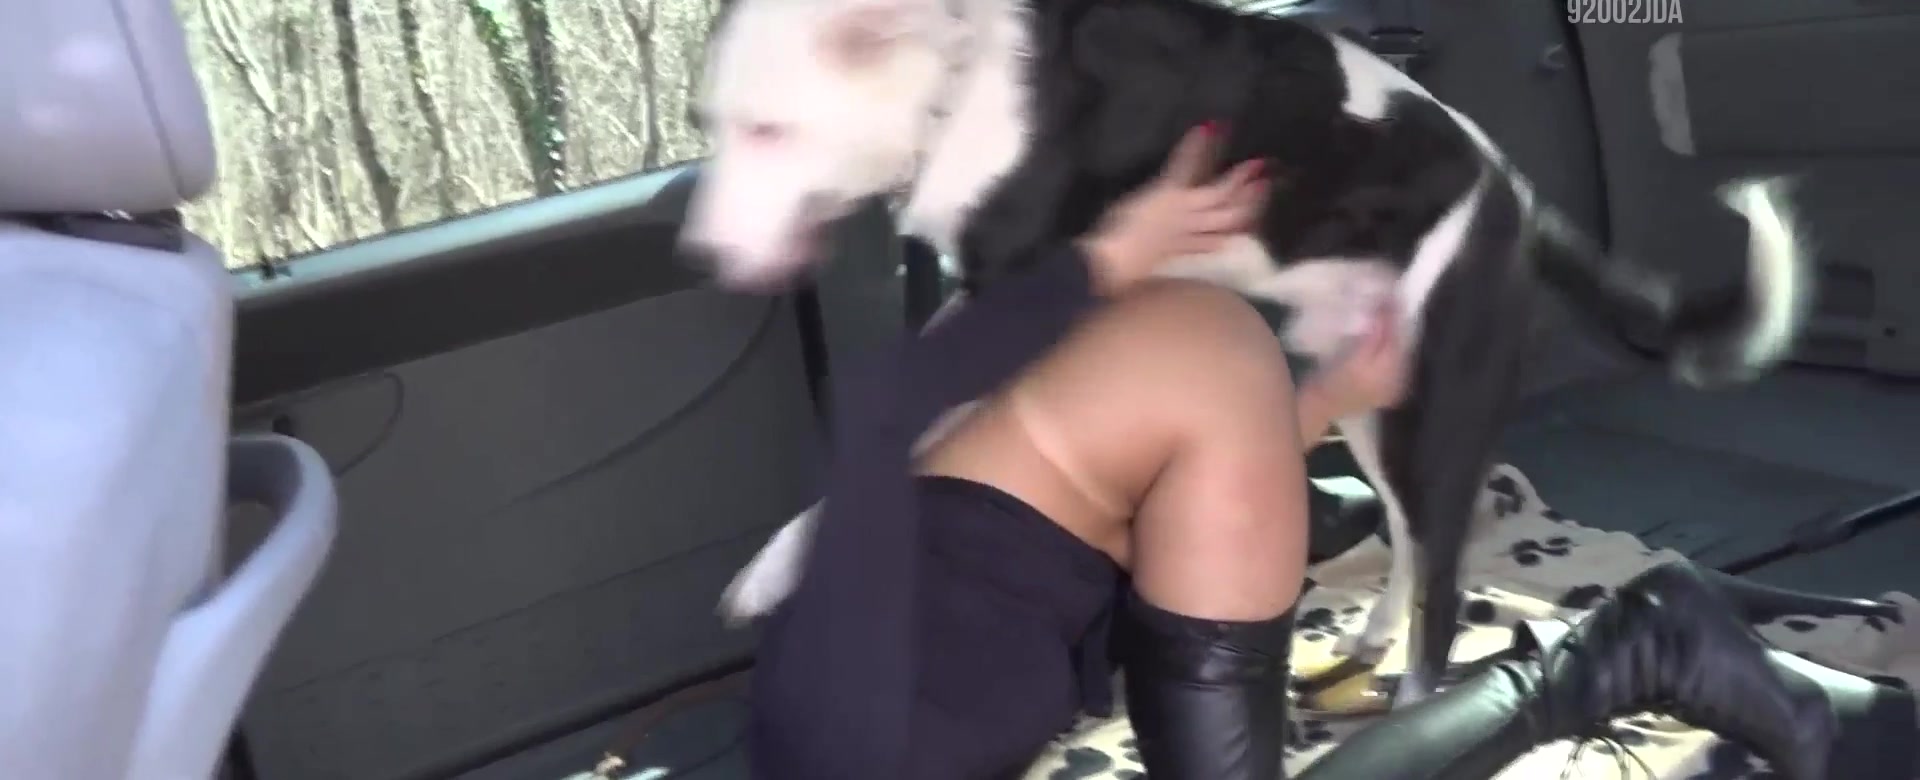 Mulheres fazendo sexo com cachorro